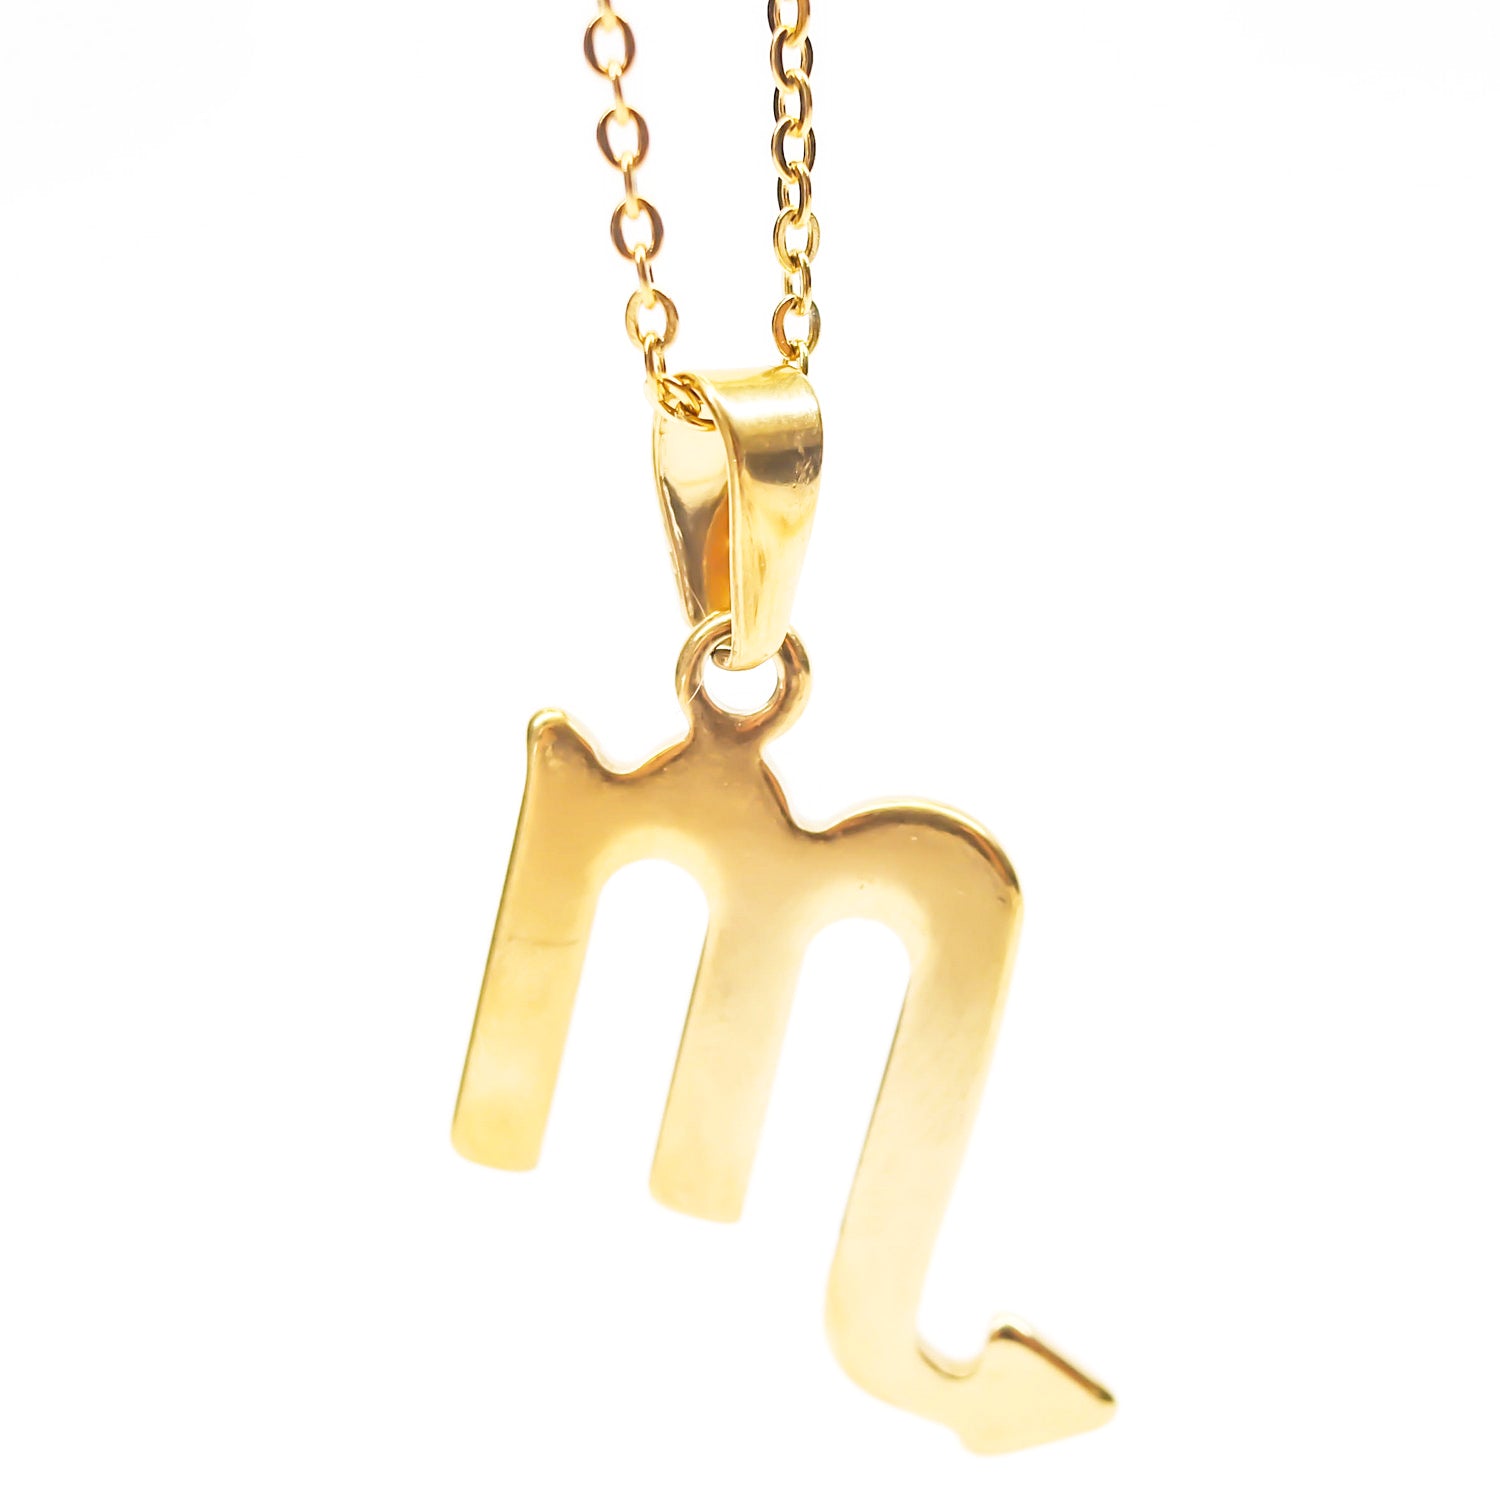 Colgante de acero inoxidable dorado con forma del signo del zodiaco Escorpio de 28mm